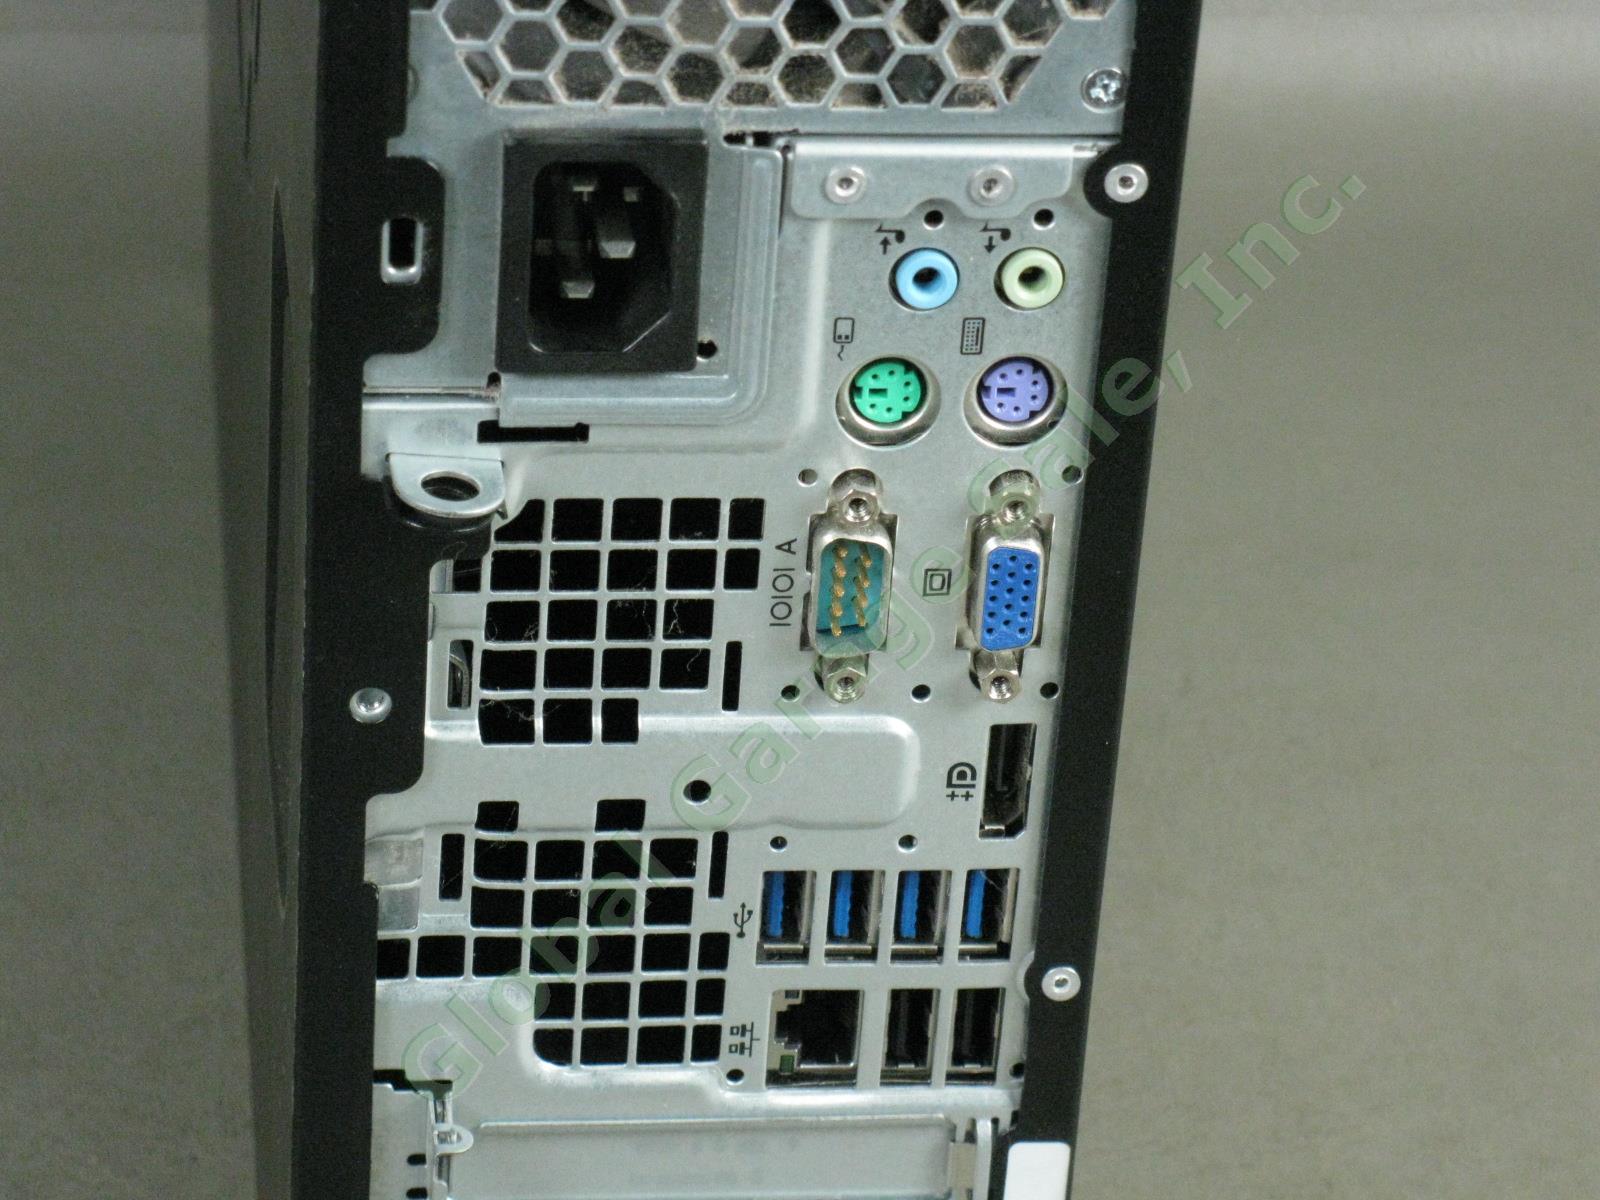 HP Compaq 6300 SFF Desktop Intel i5 3.20GHz 2GB 250GB Windows 10 Pro New Install 4